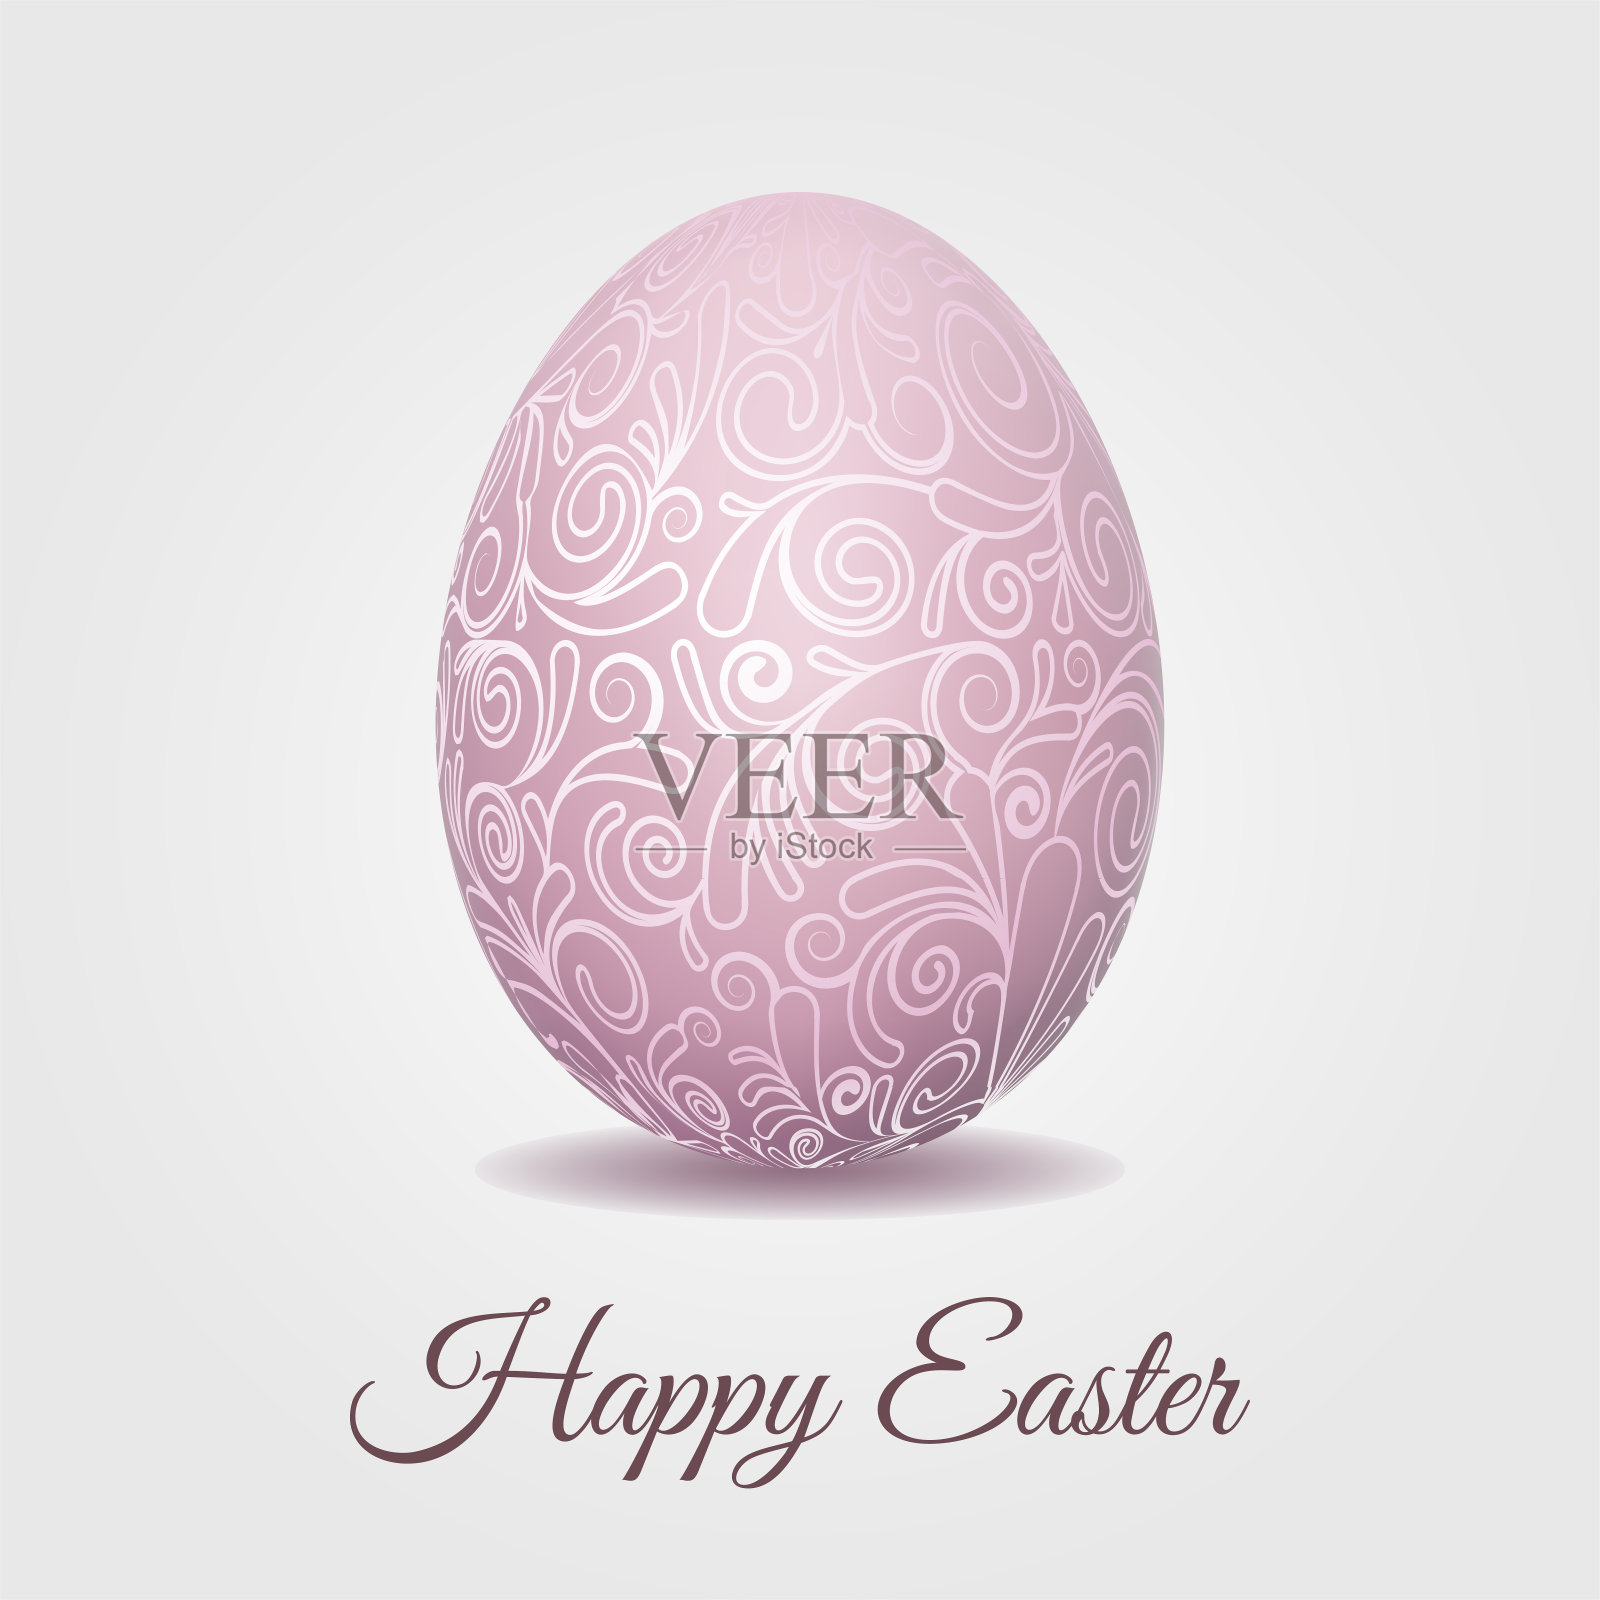 带有淡粉色彩蛋的复活节卡片设计模板素材